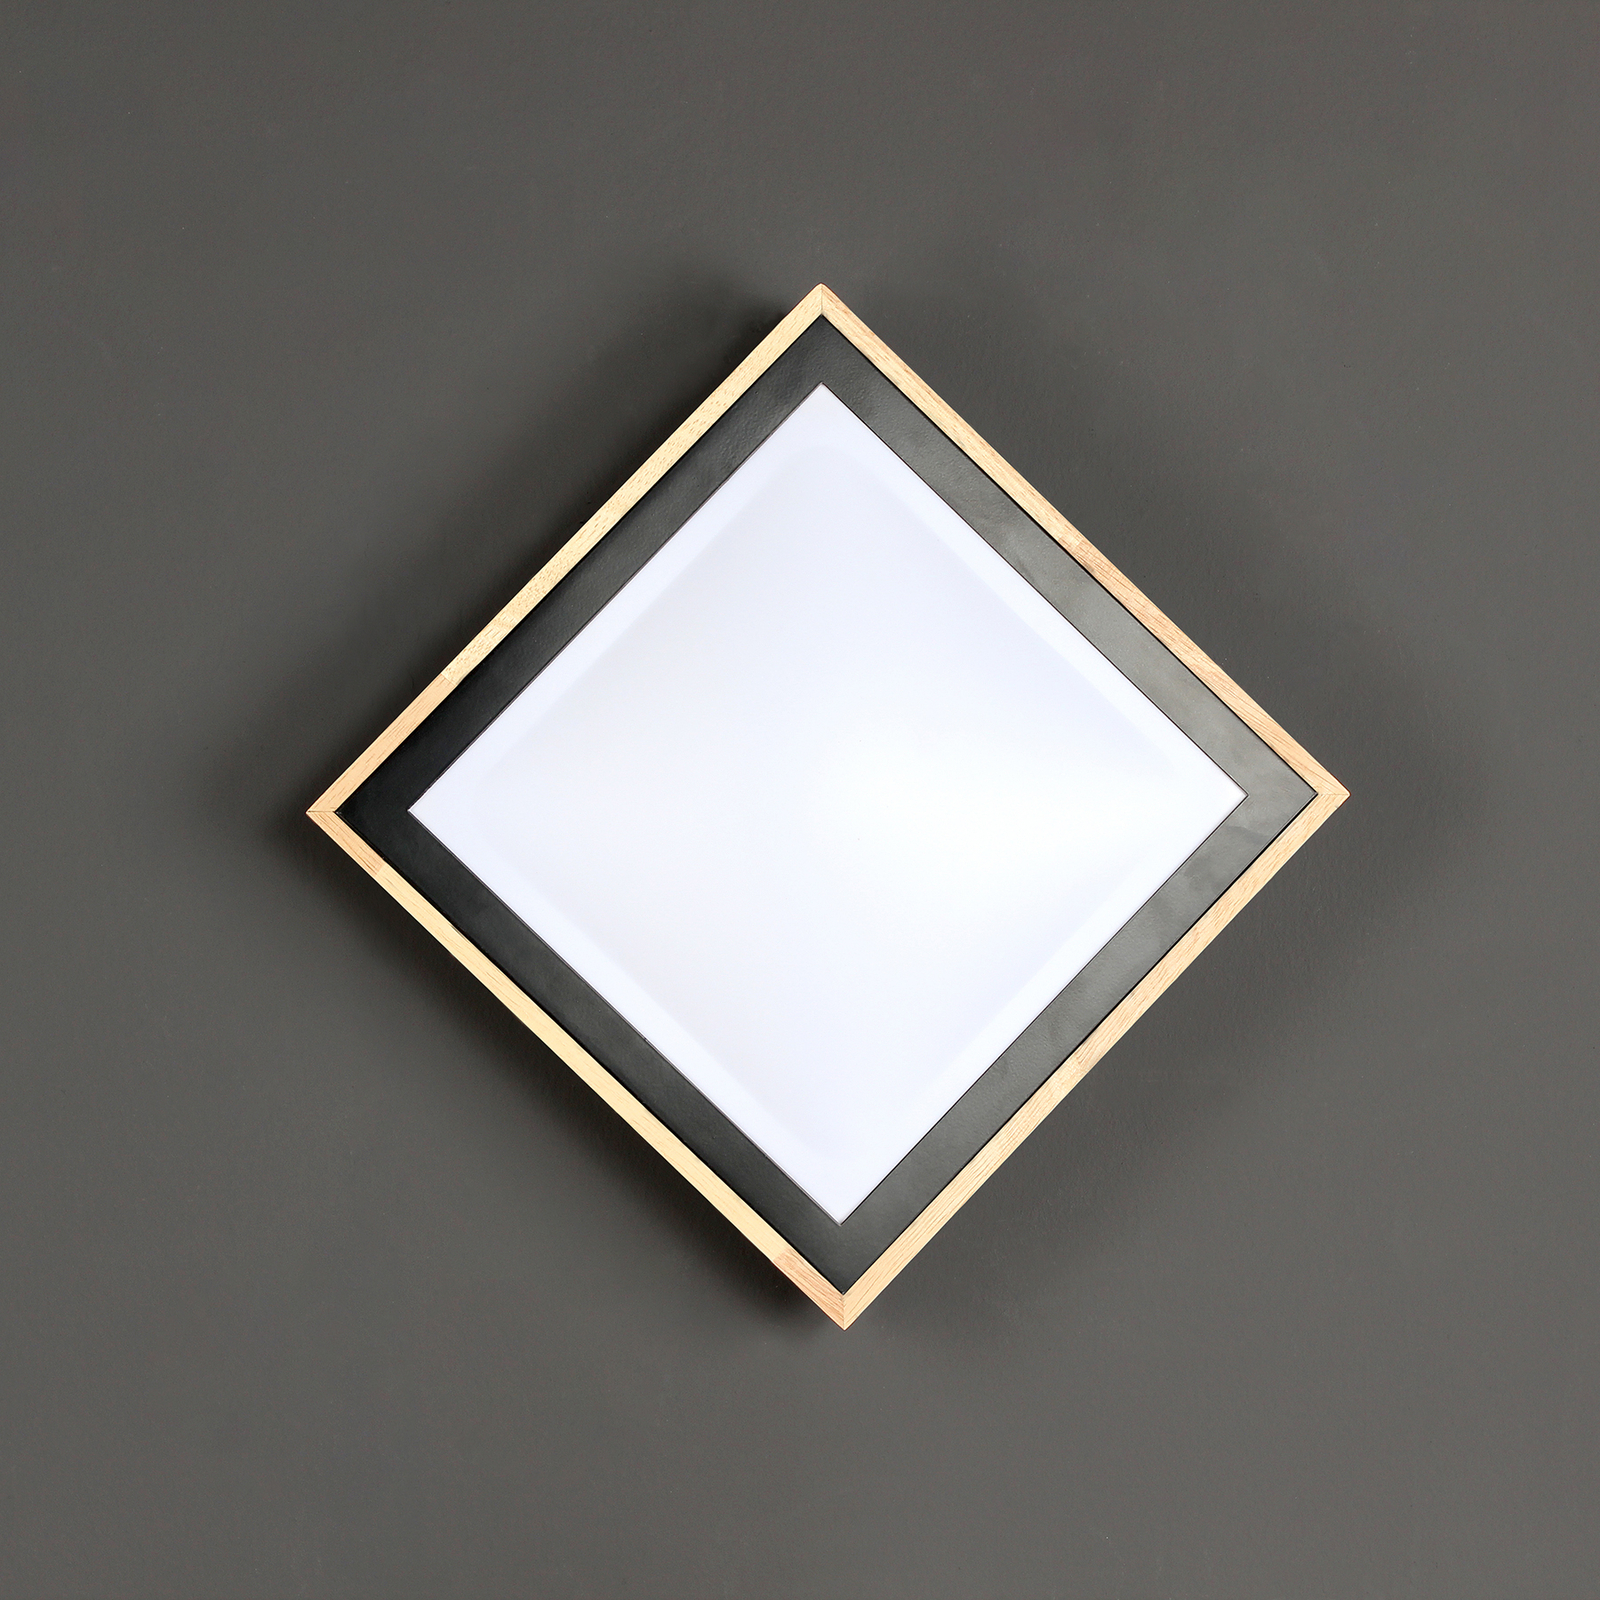 Stropné LED svetlo Solstar hranaté, 28,5 x 28,5 cm